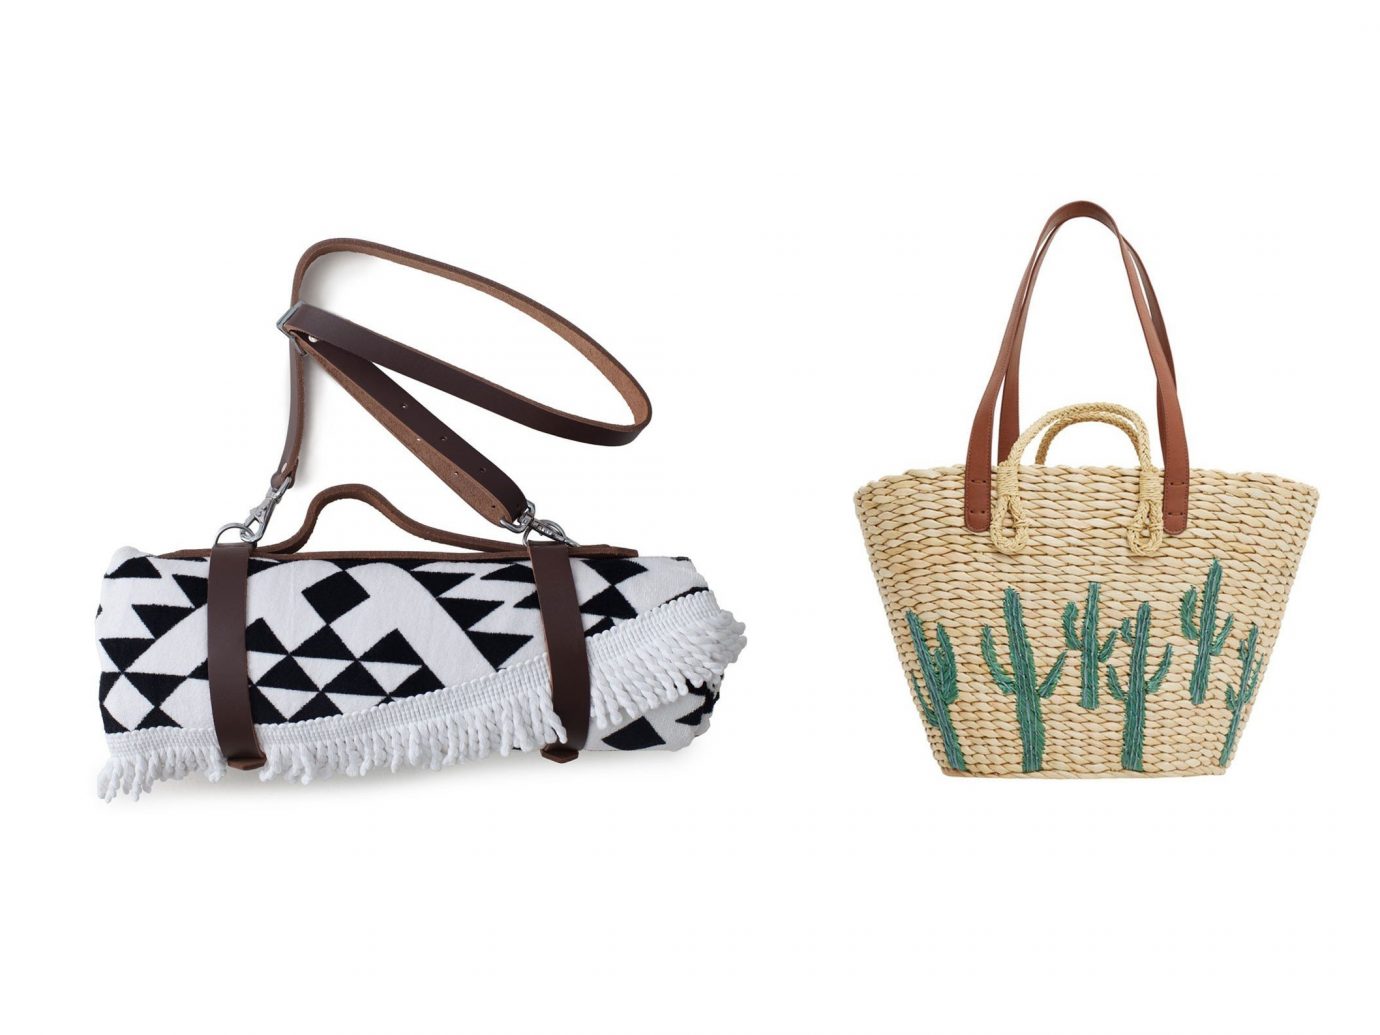 Style + Design handbag bag shoulder bag fashion accessory product basket brand tote bag pattern